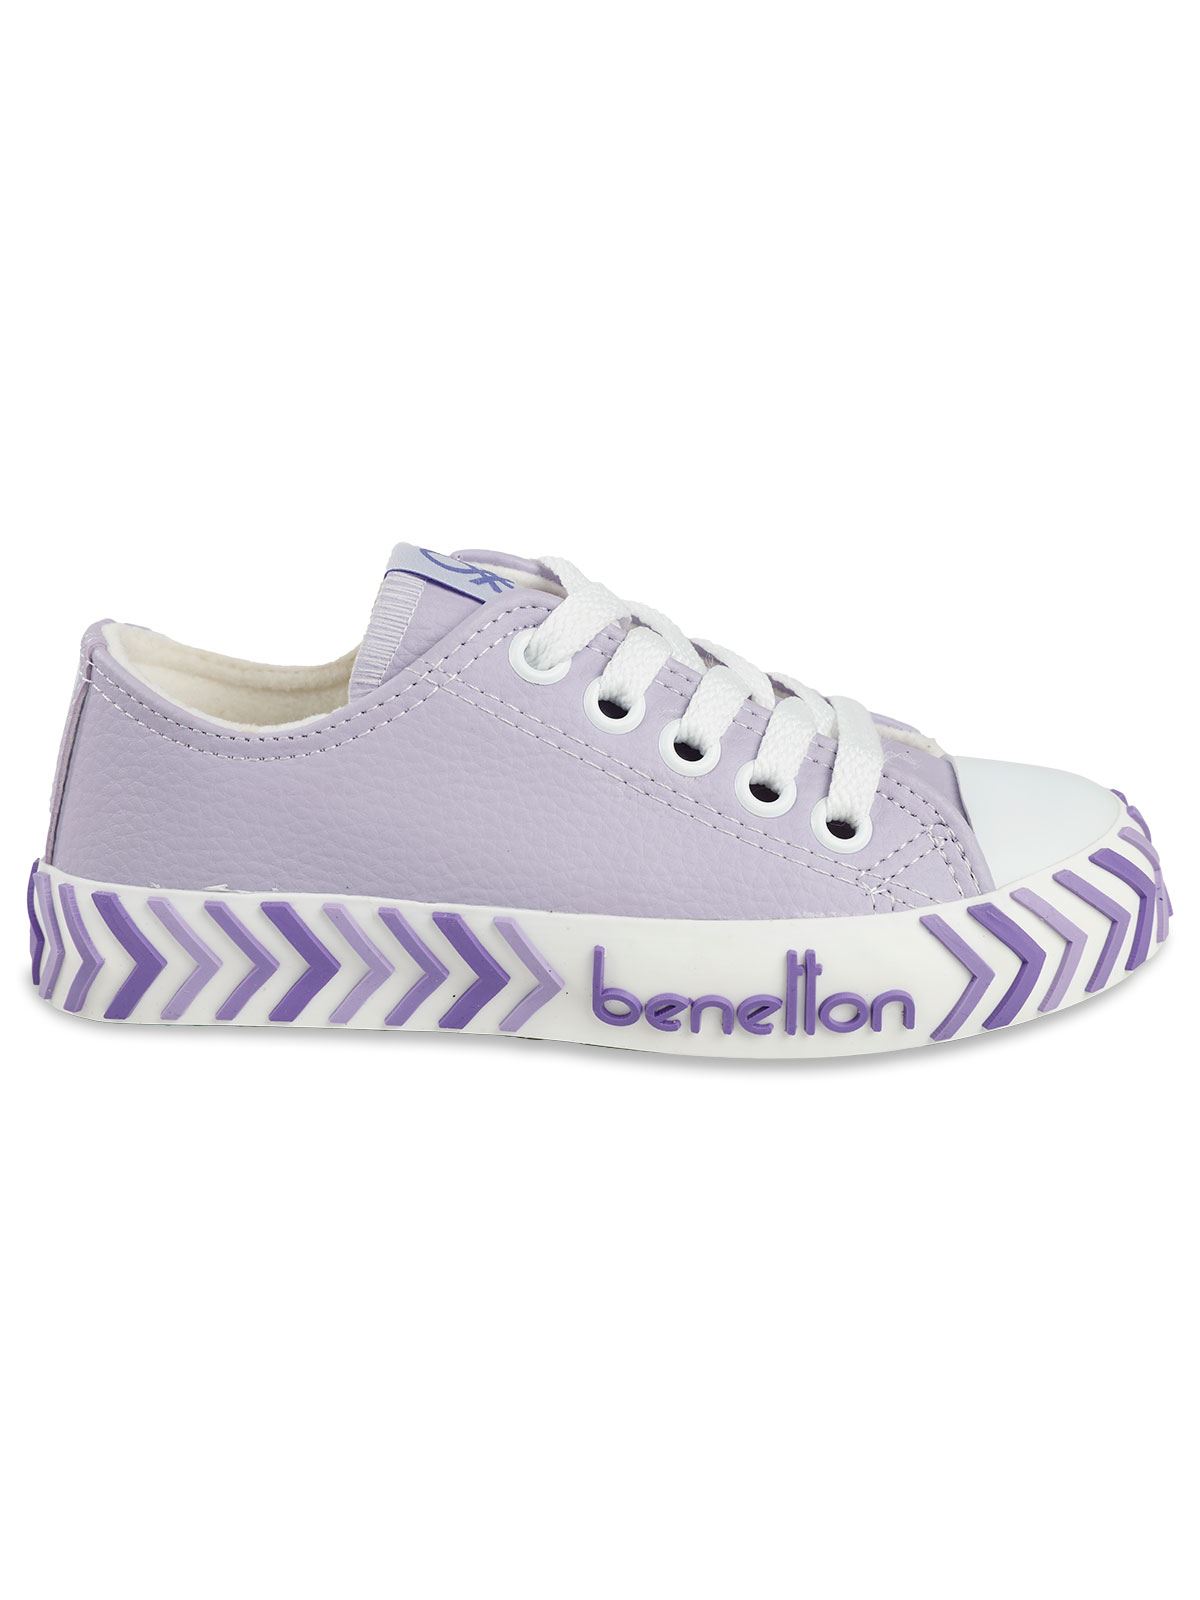 Benetton Kız Çocuk Spor Ayakkabı 31-35 Numara Lila